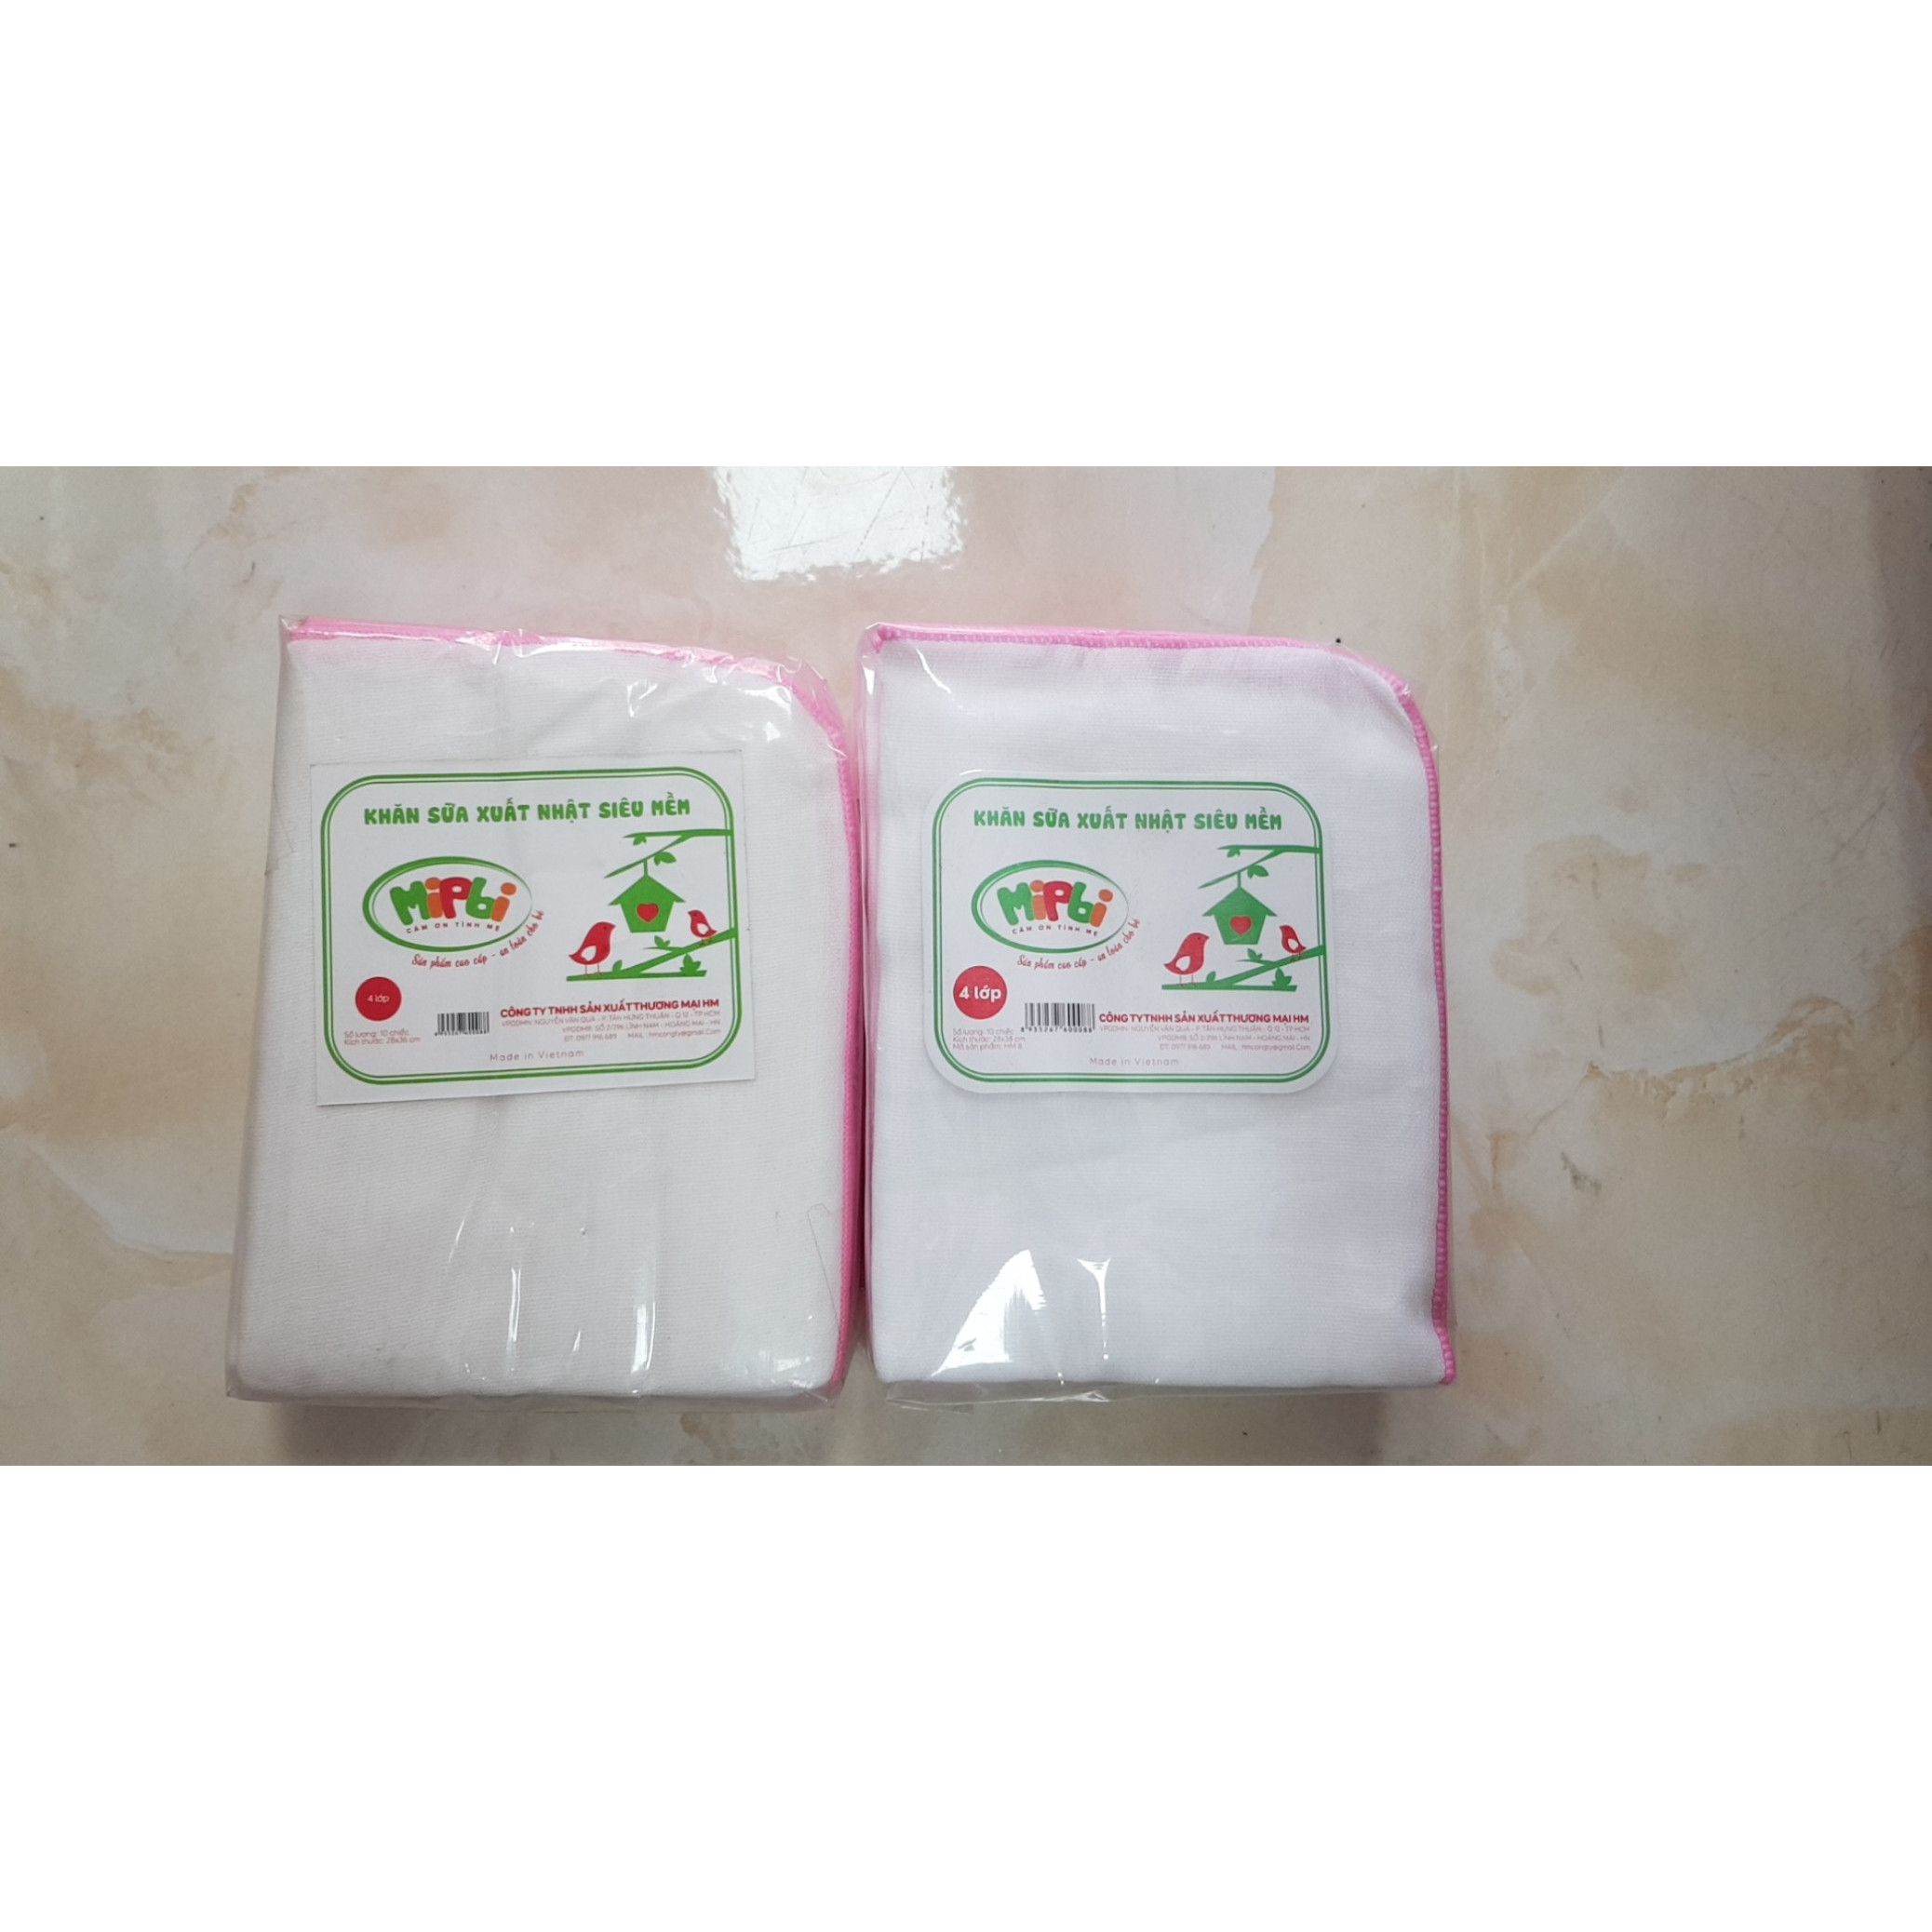 Combo 2 gói khăn xô sữa xuất nhật Mipbi 4 lớp màu hồng